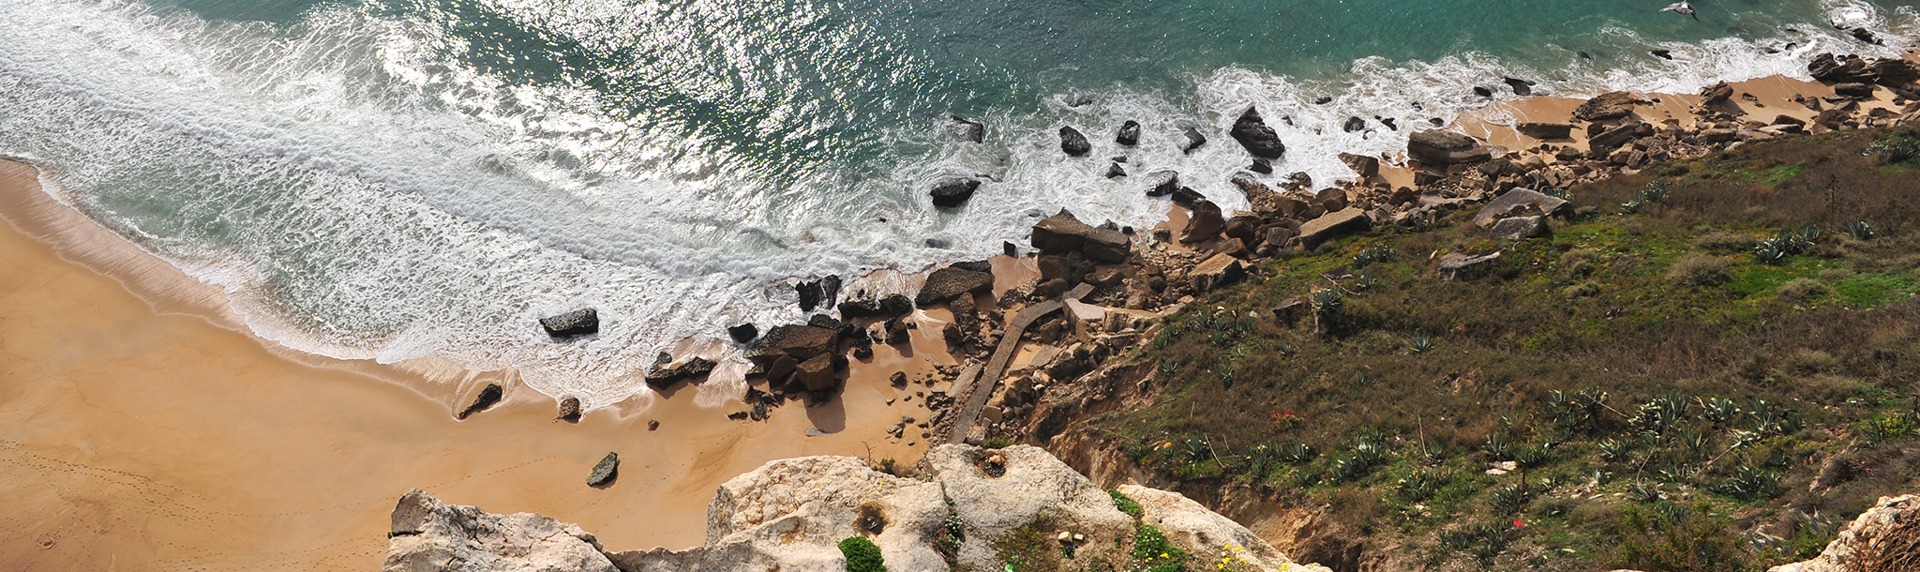 Surfen in Portugal: Nazaré